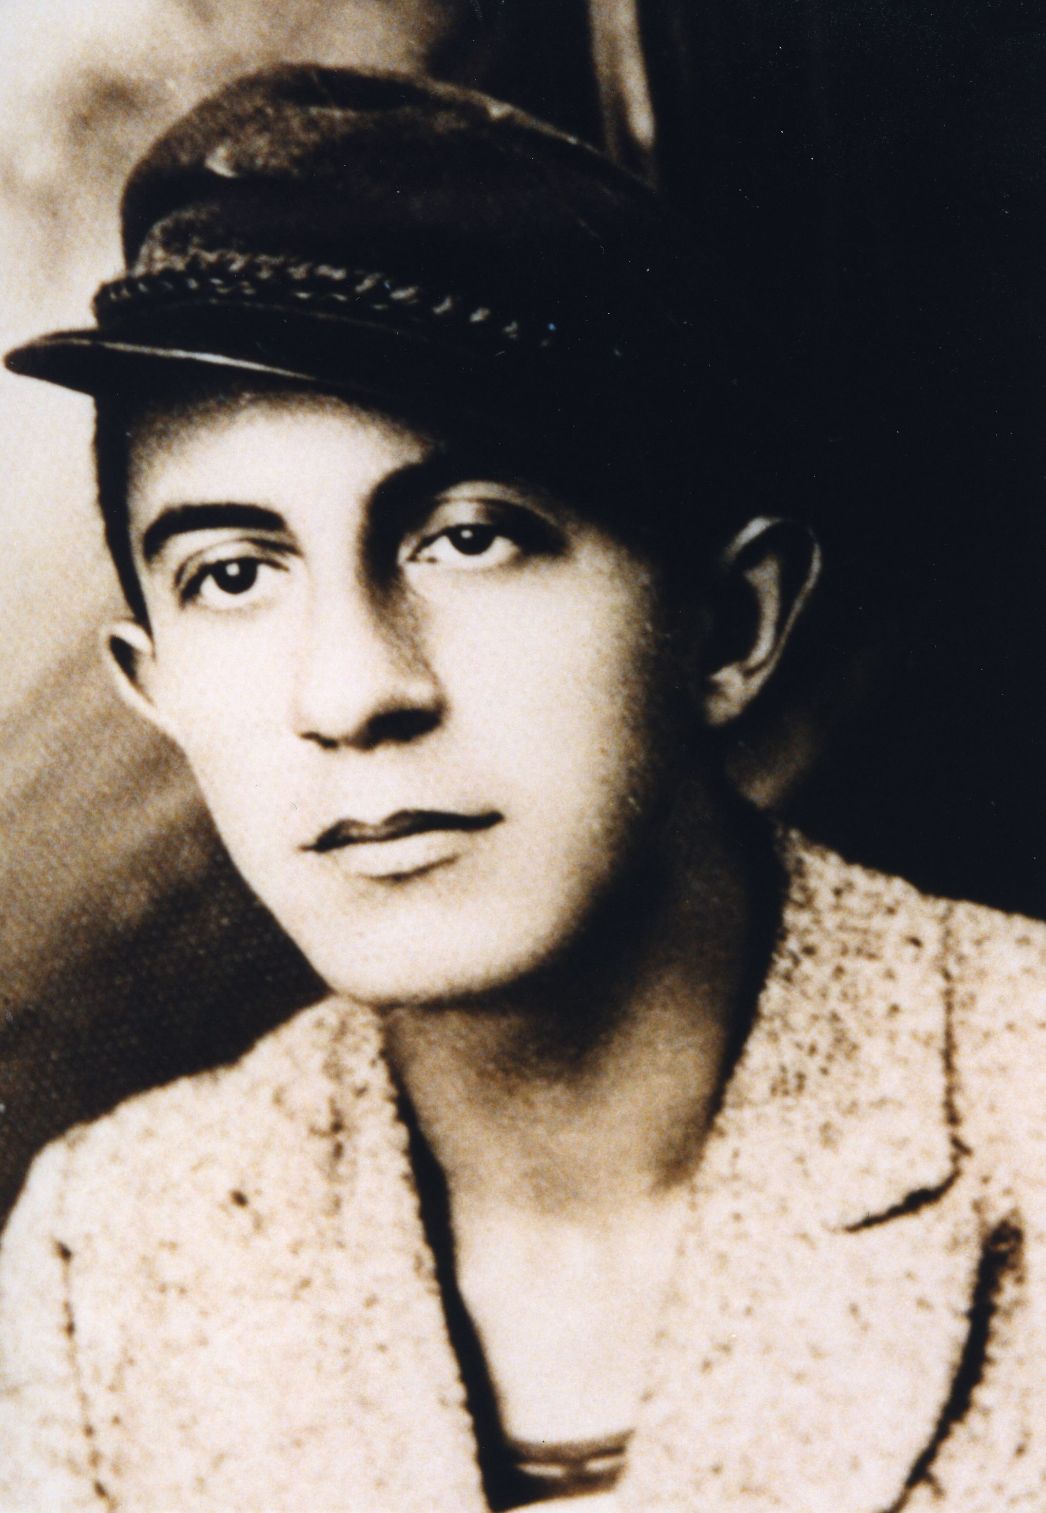 Portrait photograph of Spasoje Jarakovic